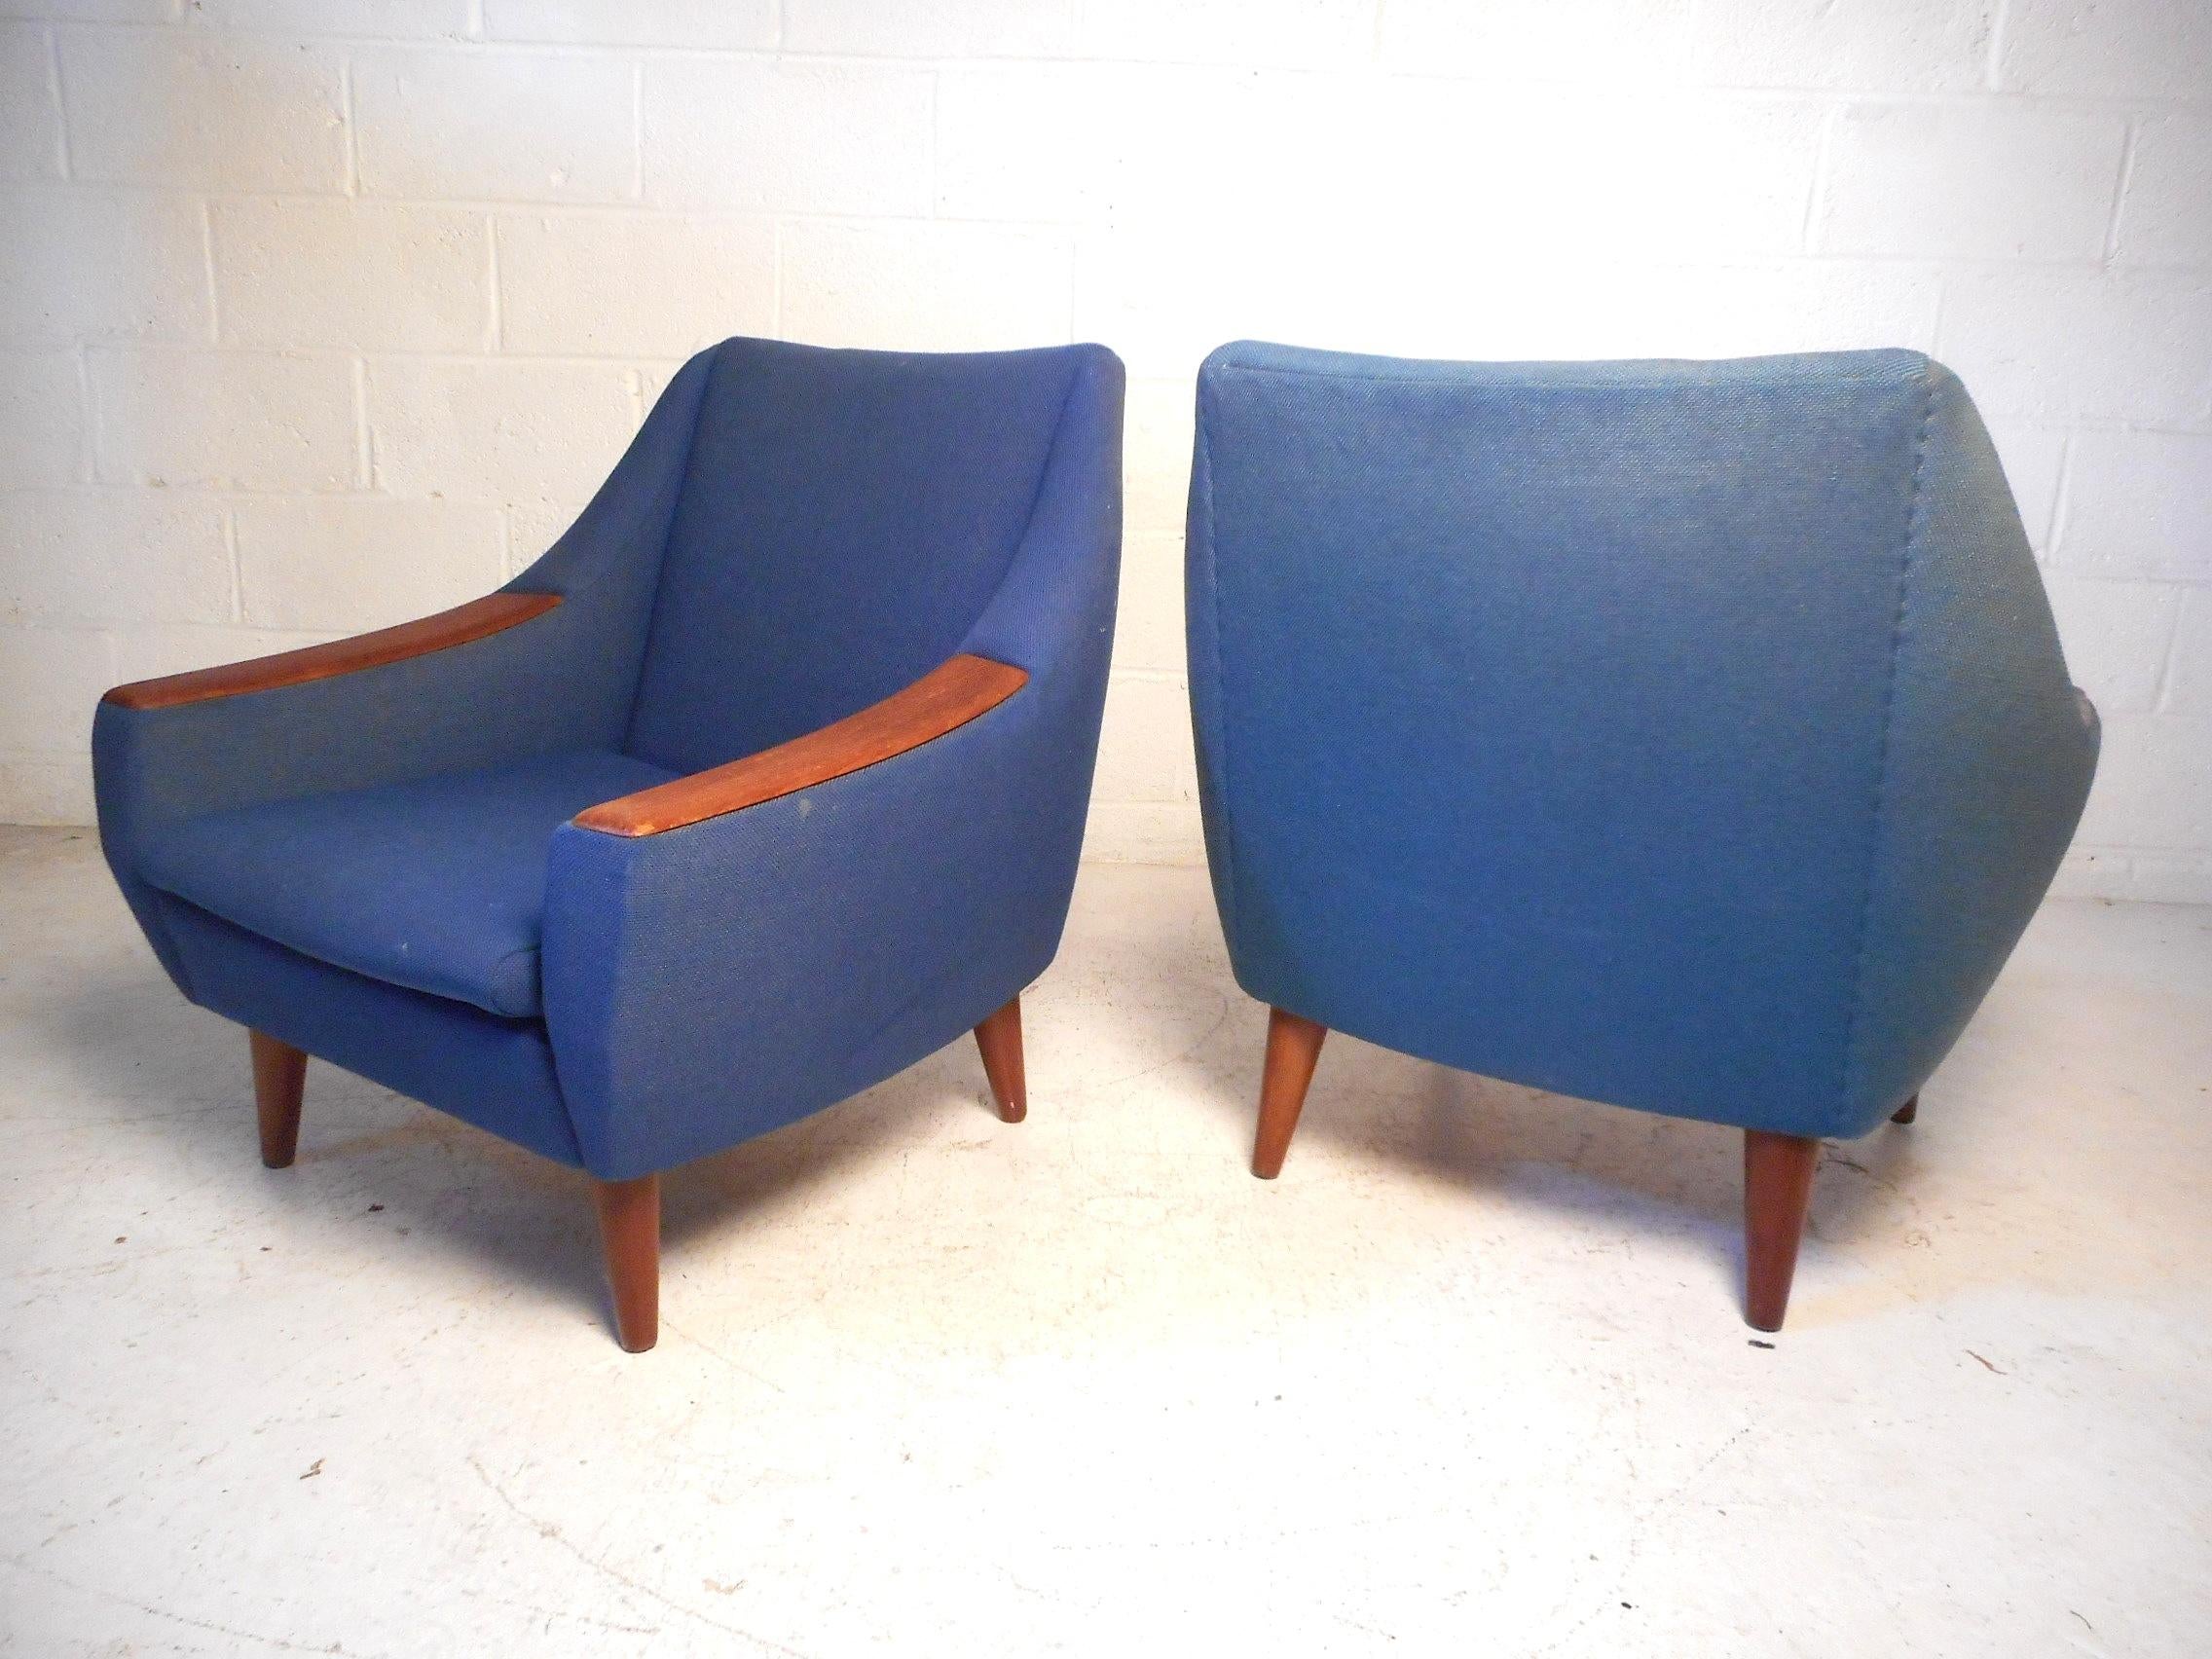 Dieses beeindruckende Paar moderner dänischer Stühle zeichnet sich durch elegant abgeschrägte Rücken- und Armlehnen aus, die den Stühlen ein einzigartiges optisches Profil verleihen. Stilvoll verarbeitete Holzspitzen an den Armlehnen und robuste,